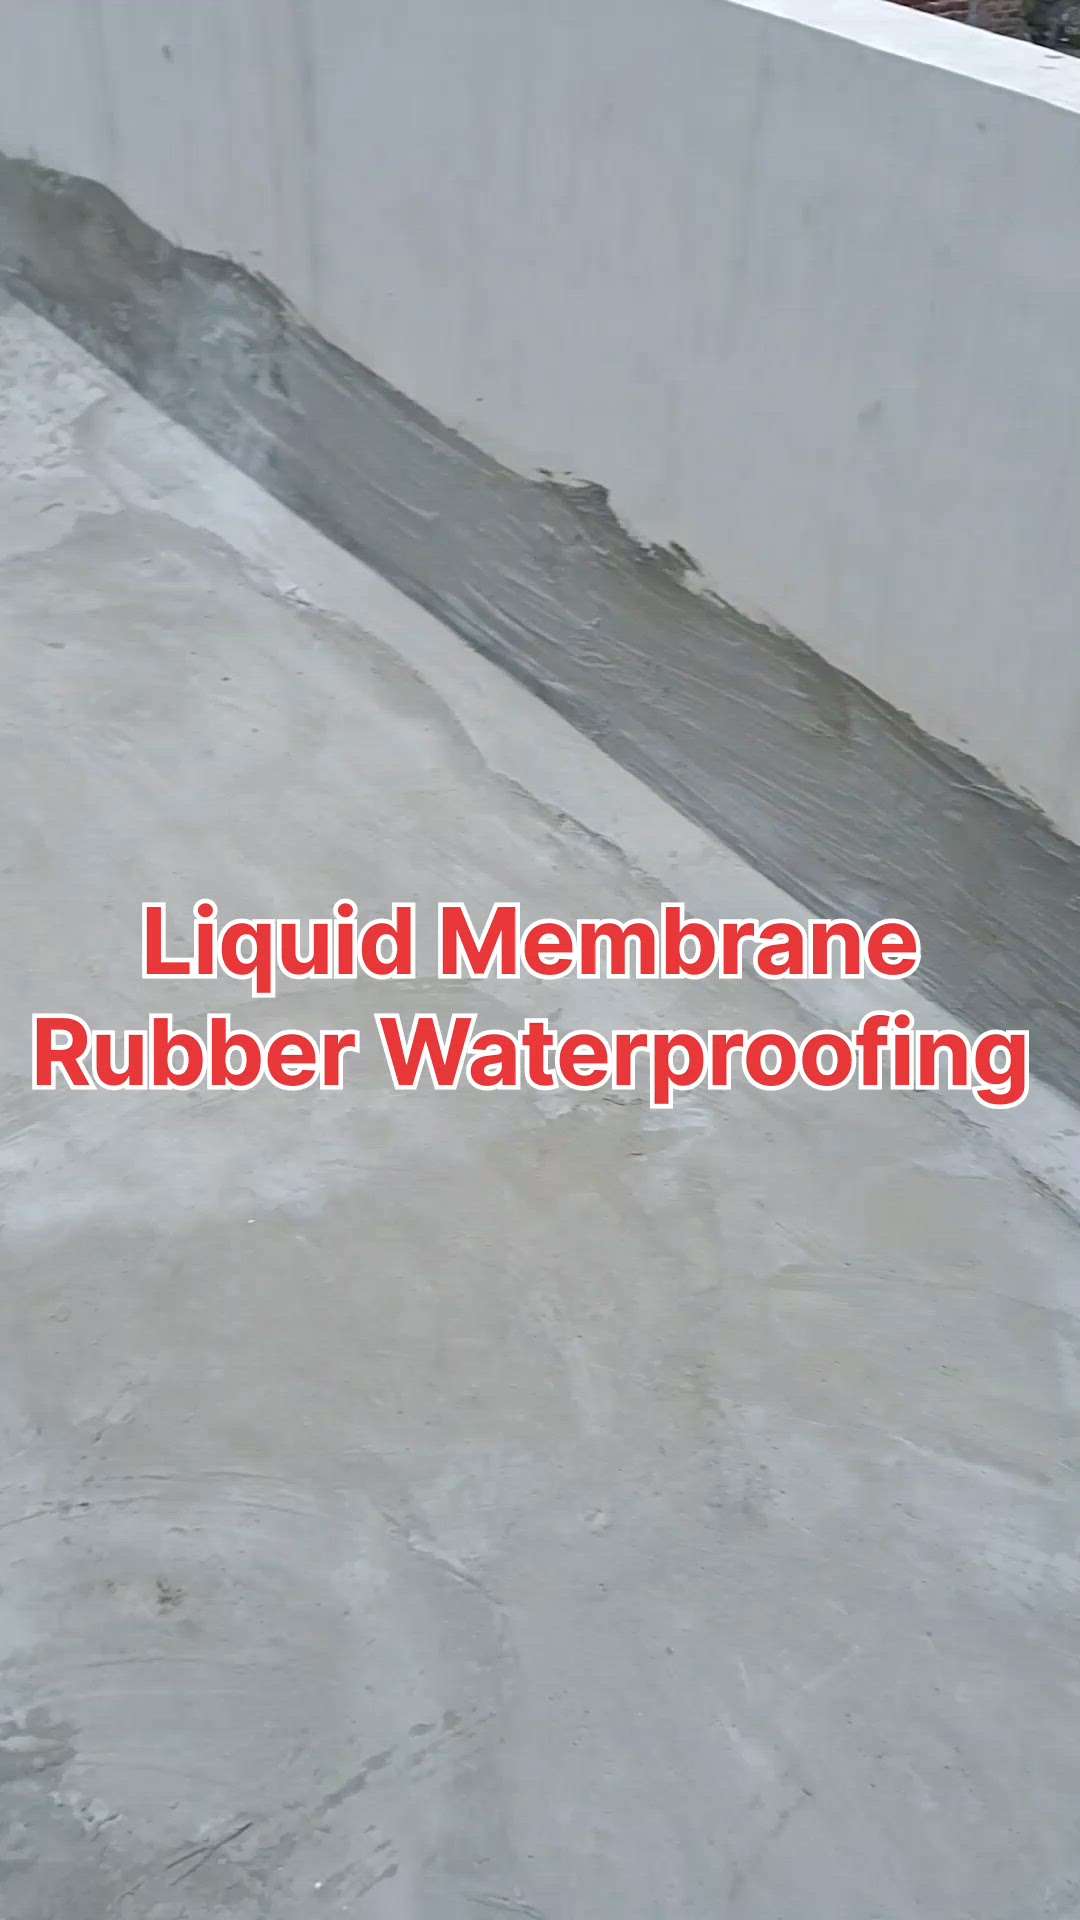 #Waterproofing #terracewaterproofing #roofwaterproofing